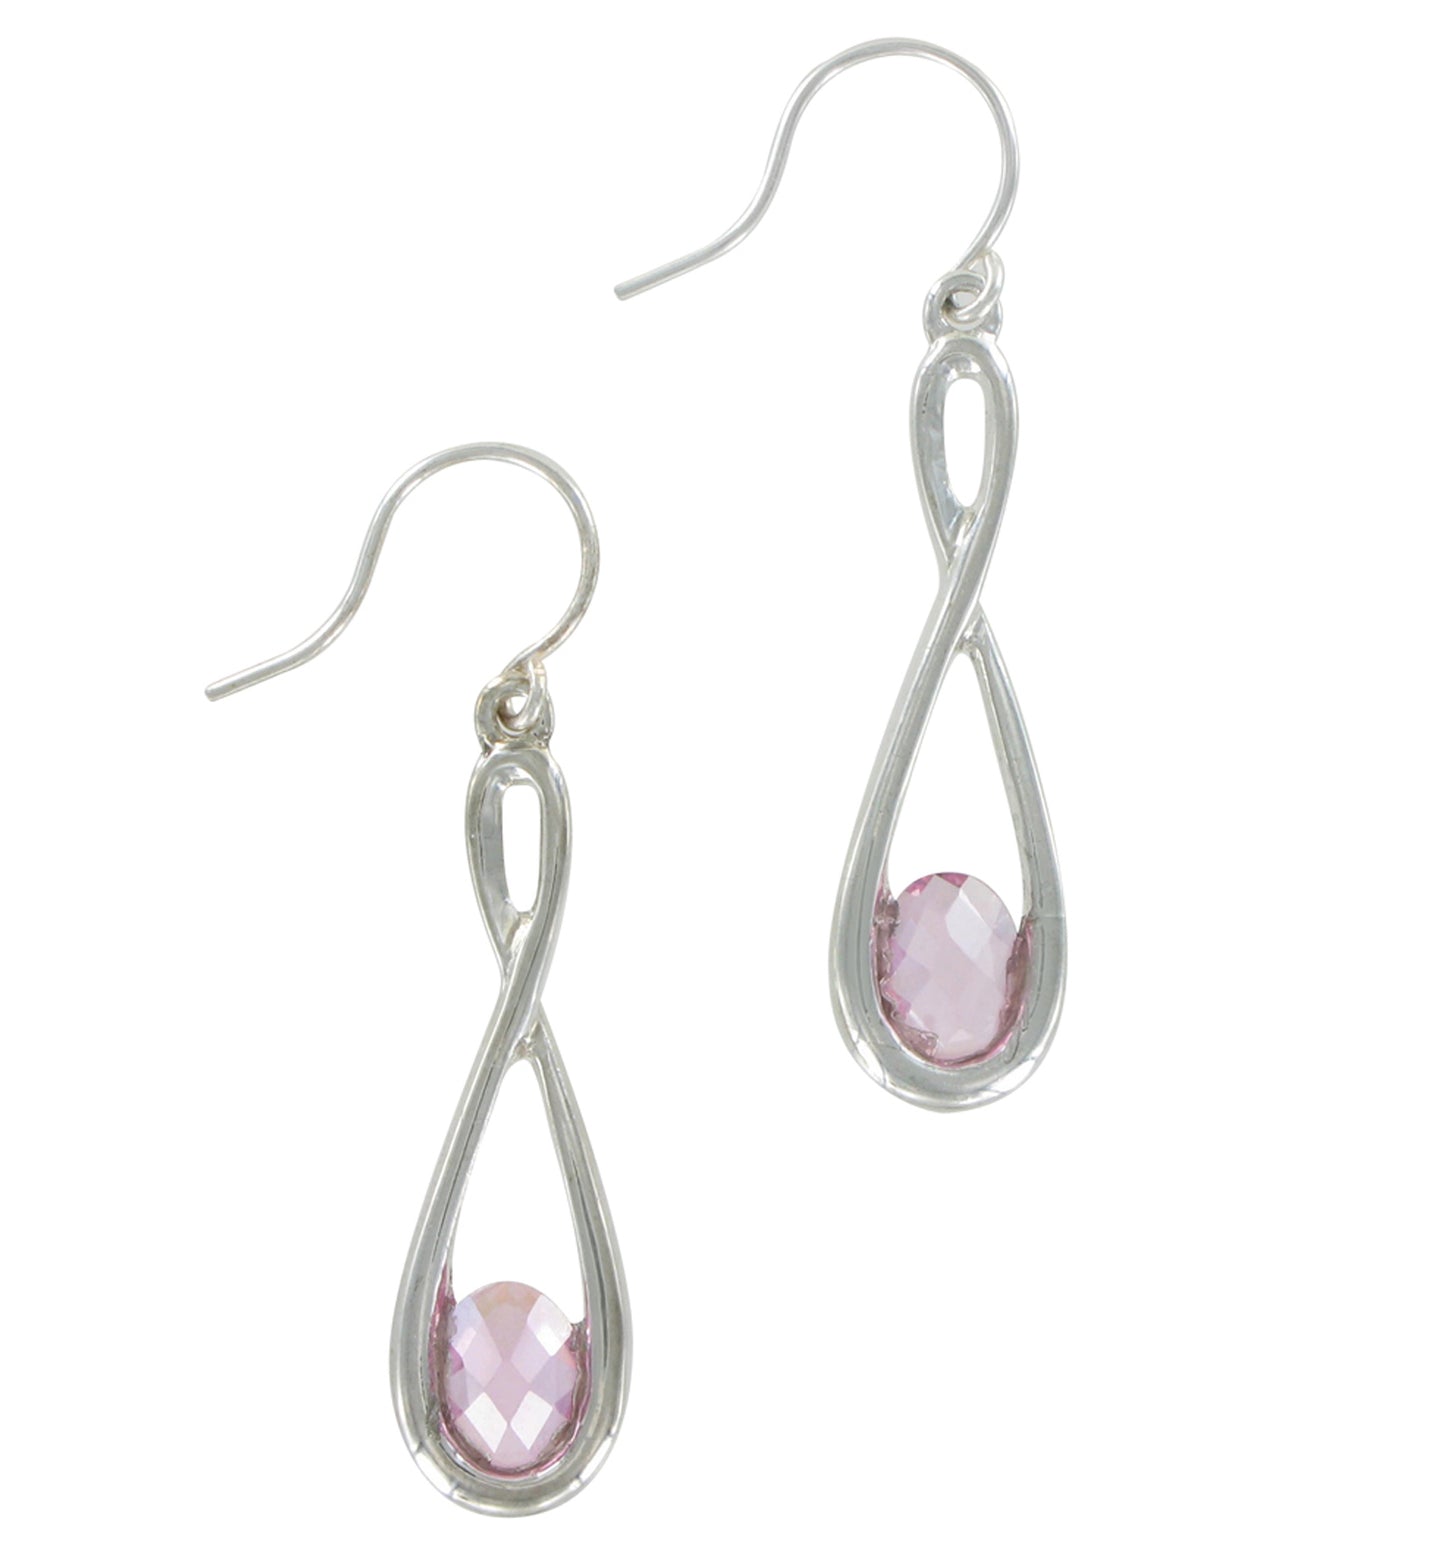 Dangle Pierced Earrings Silver Tone Pink Rhinestone Teardrop 1 1/8"